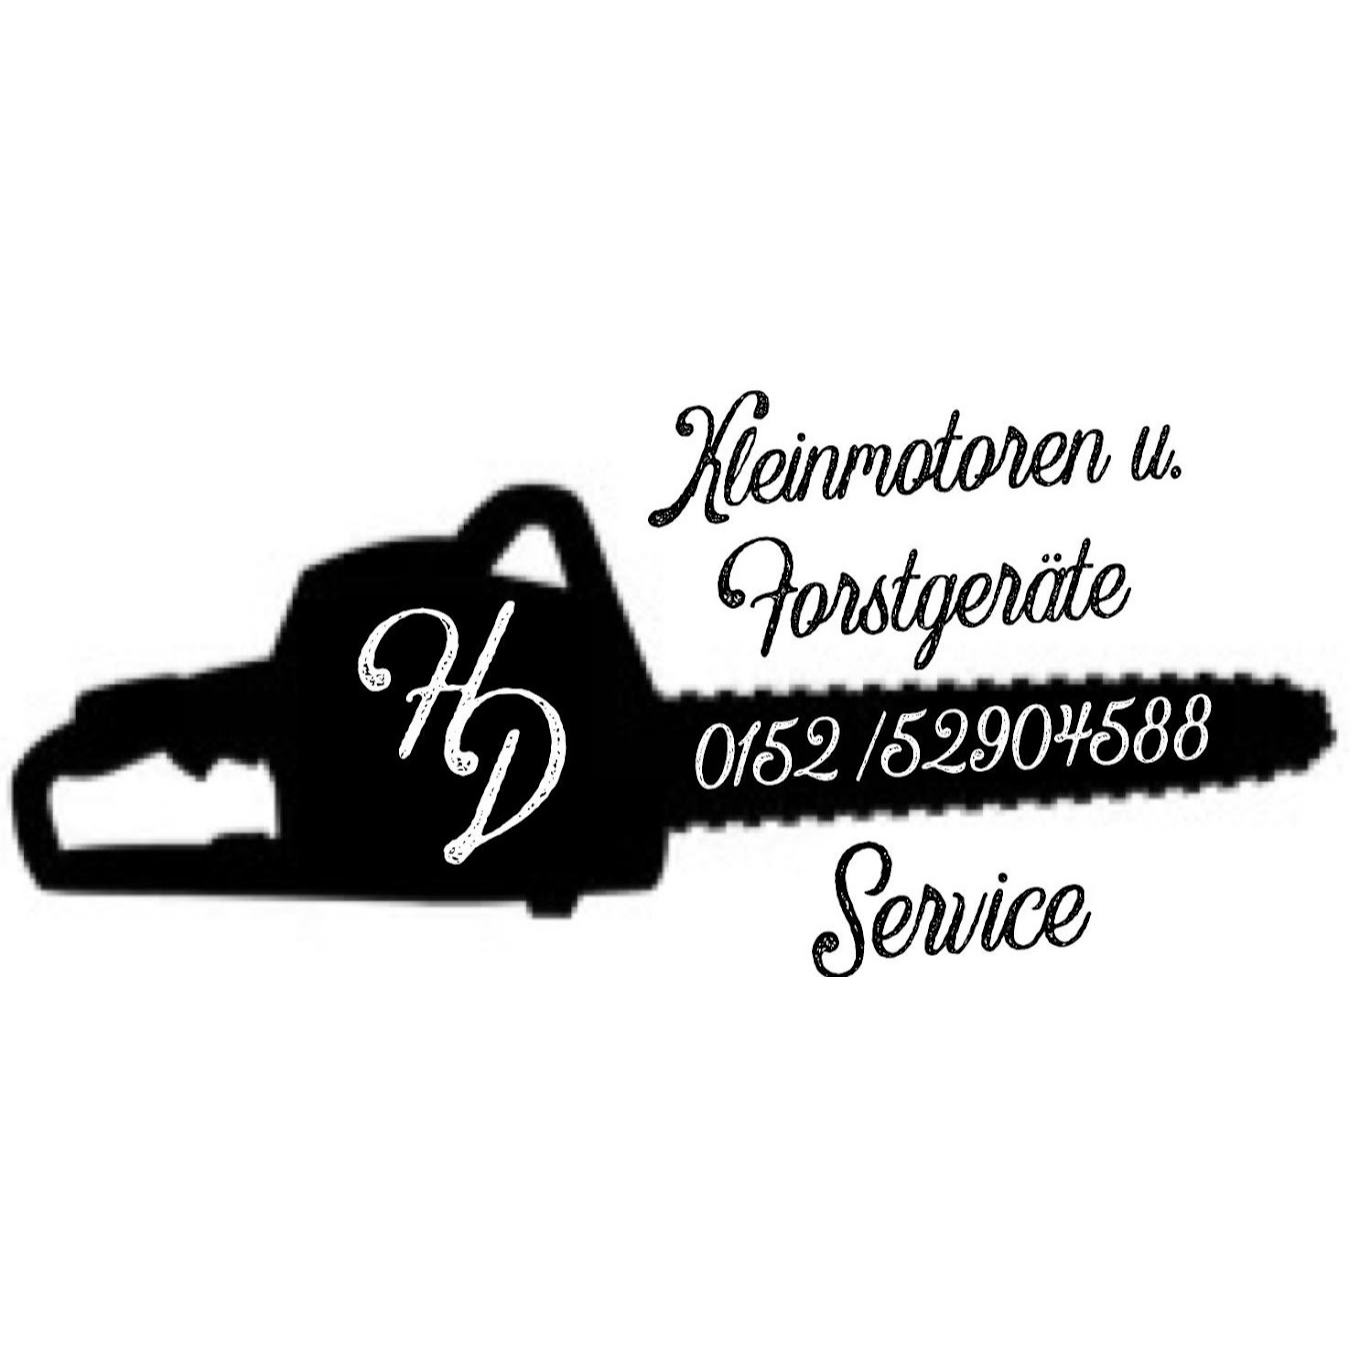 HD kleinmotoren u. Forstgeräte Service in Spiegelau - Logo